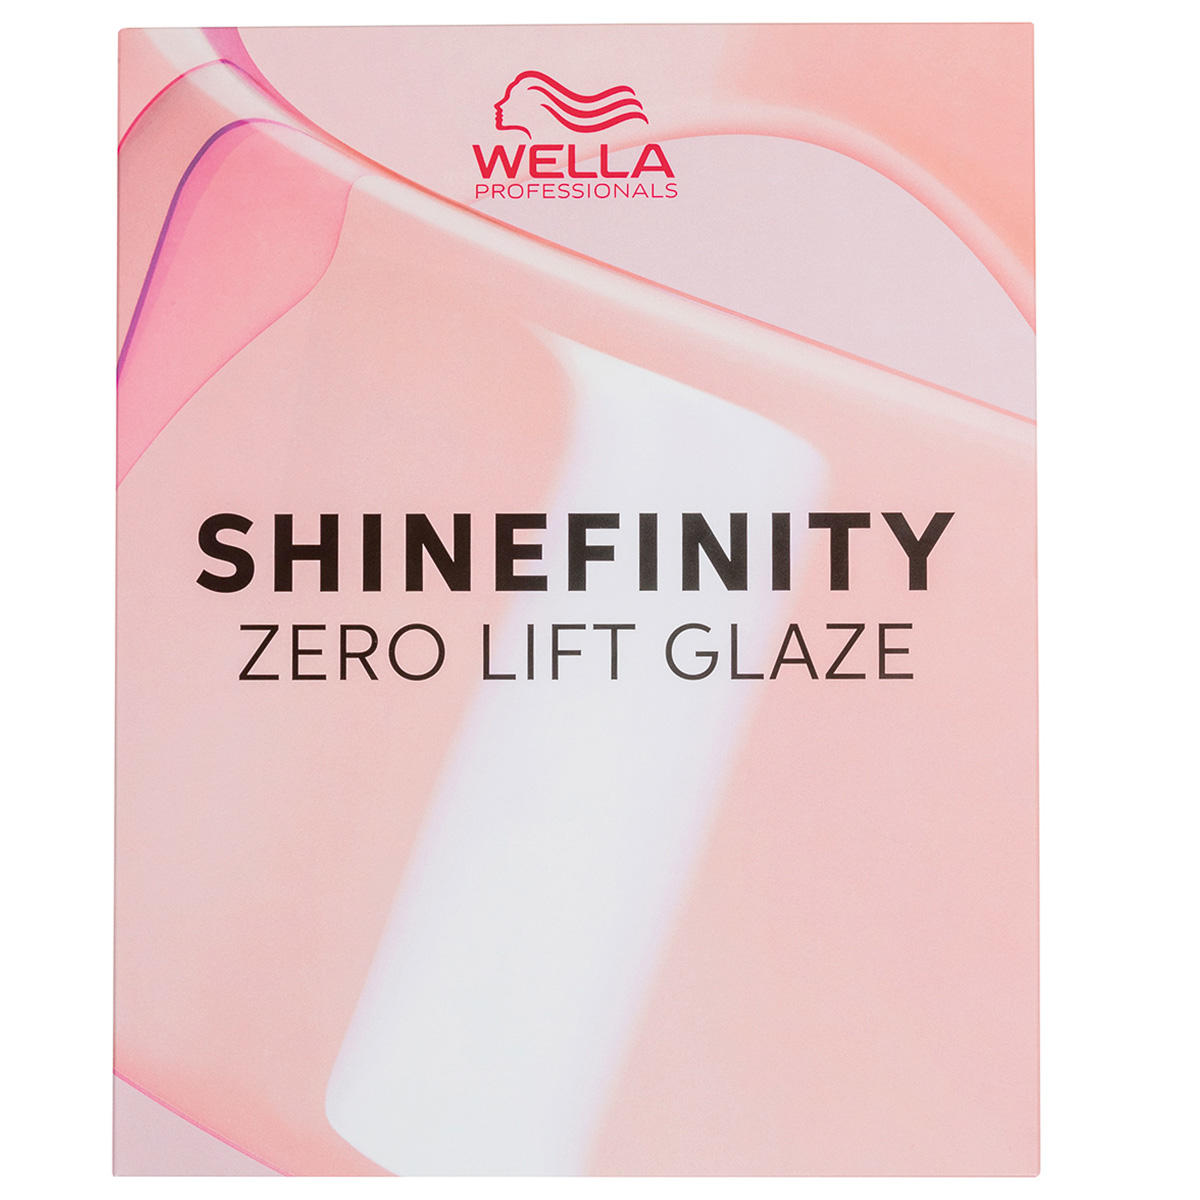 Wella Shinefinity Tabella dei colori